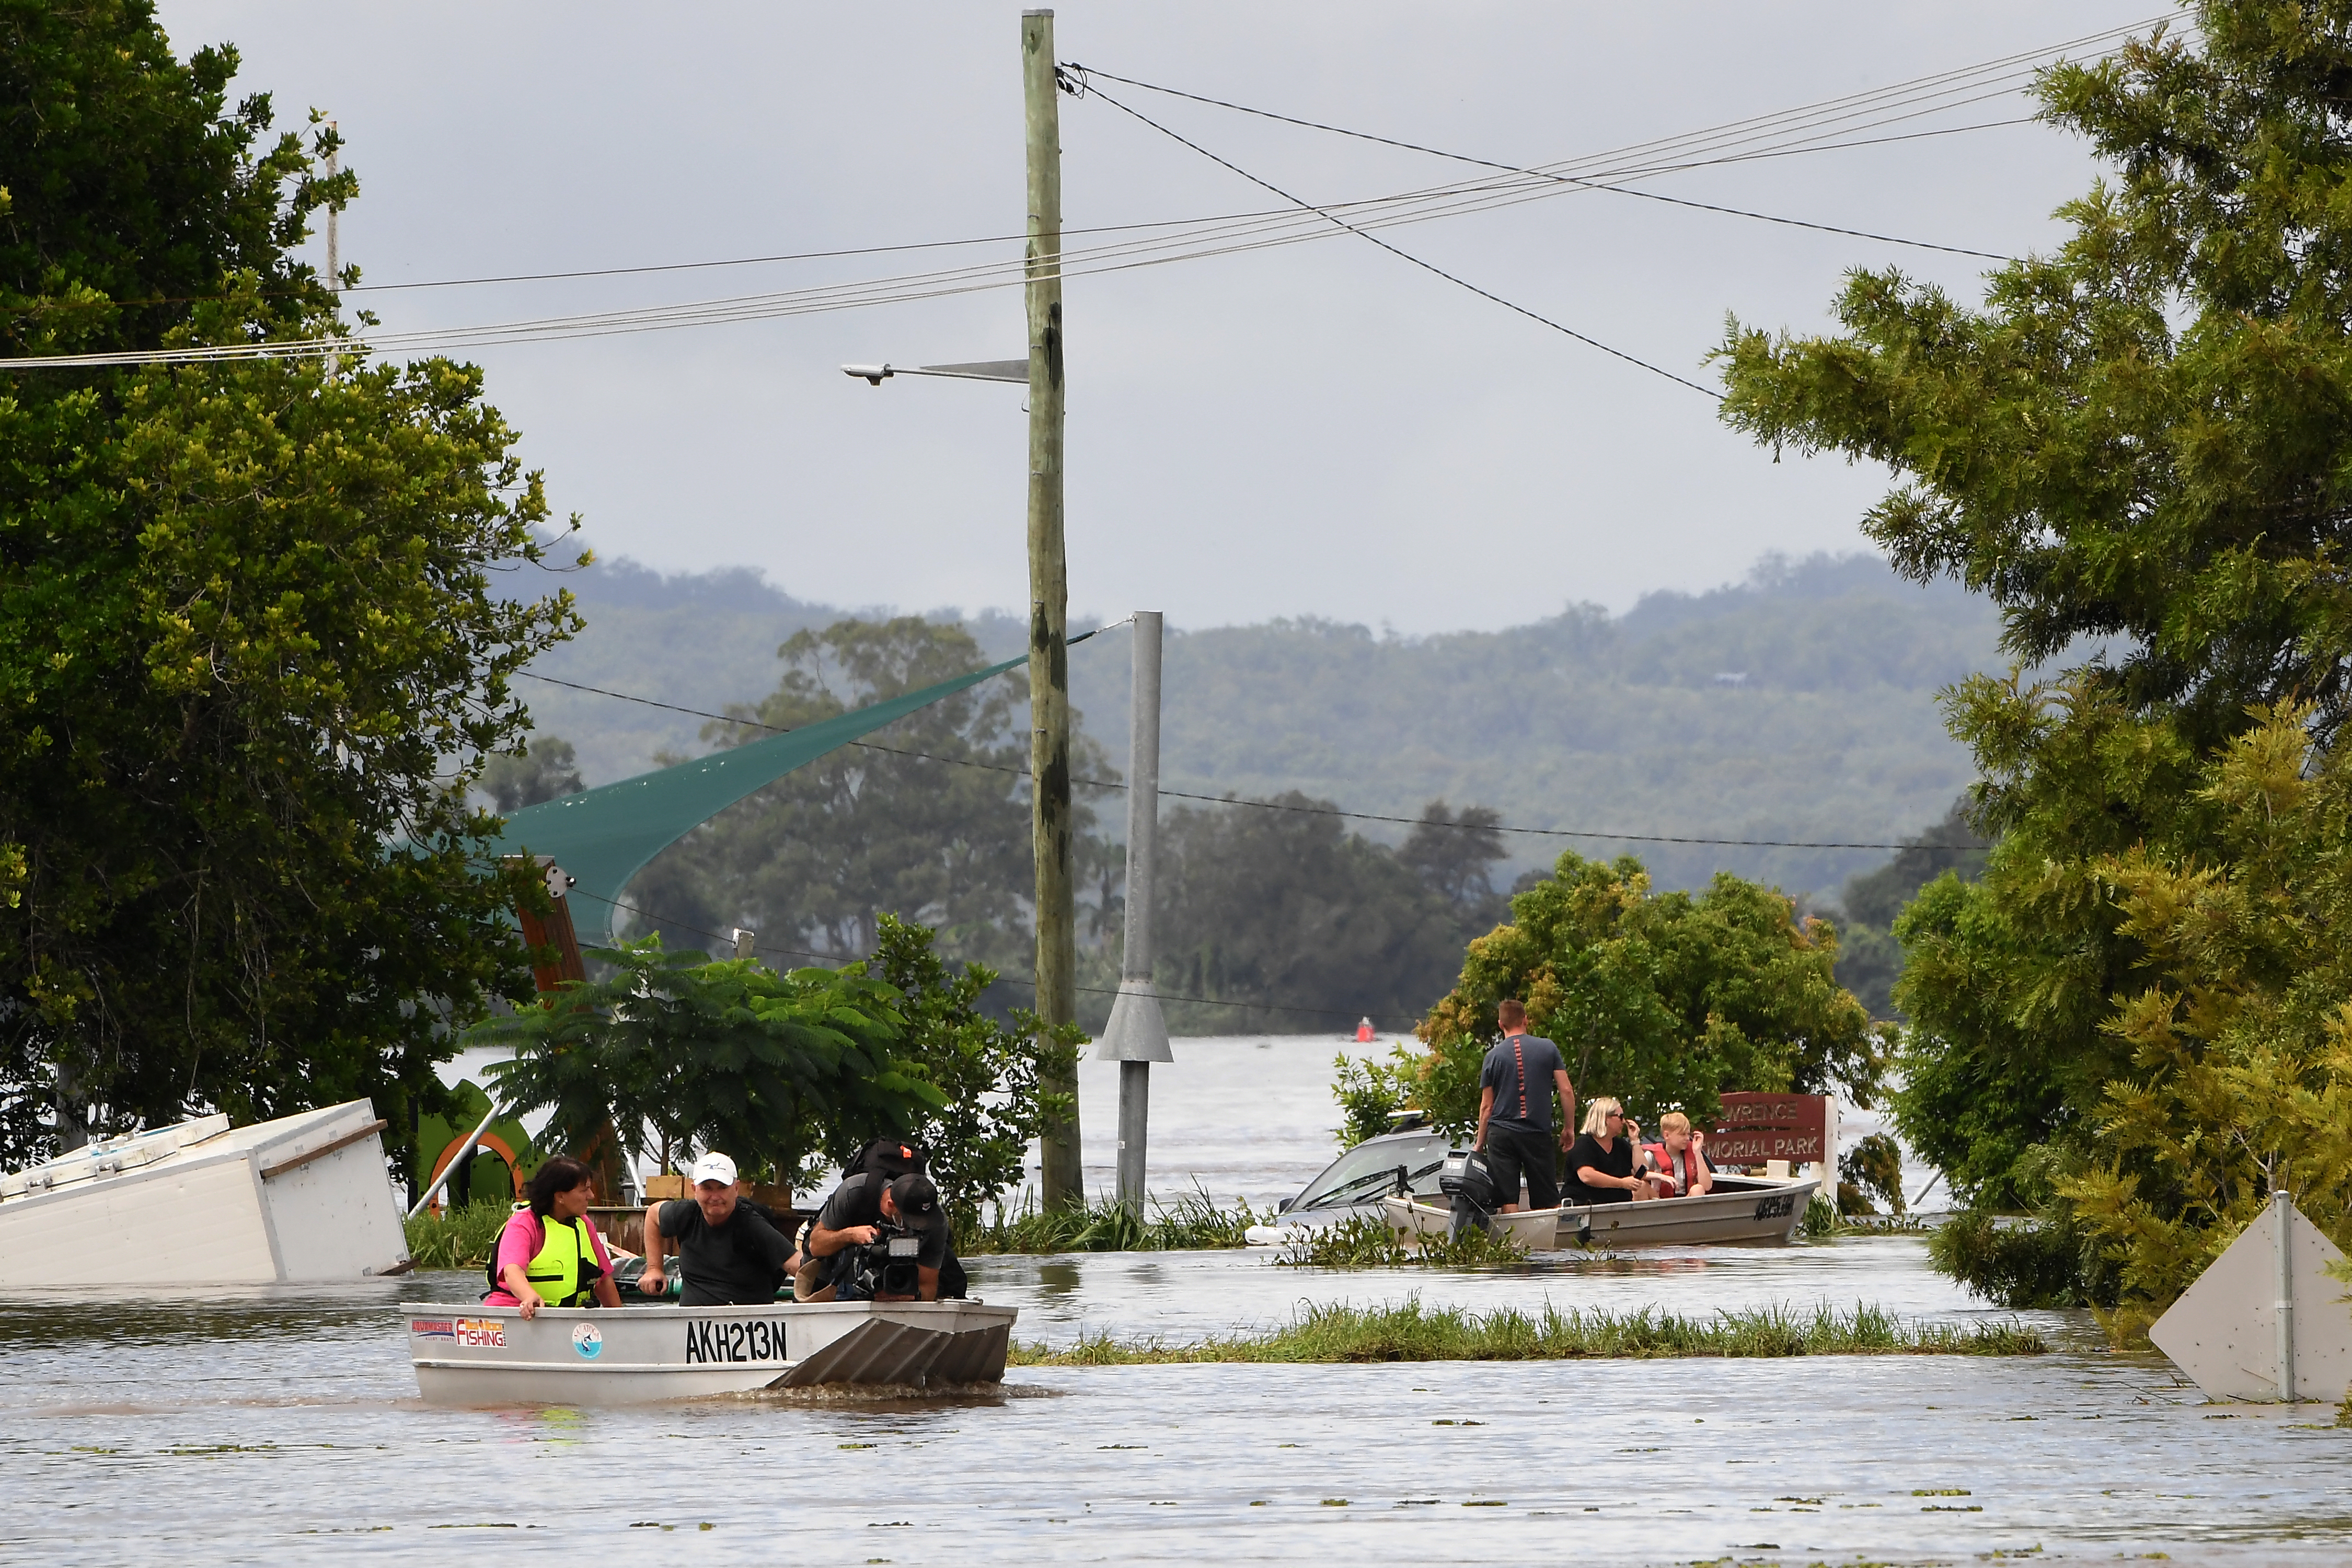 150 ezer embert evakuáltak Ausztrália keleti partján az árvíz miatt